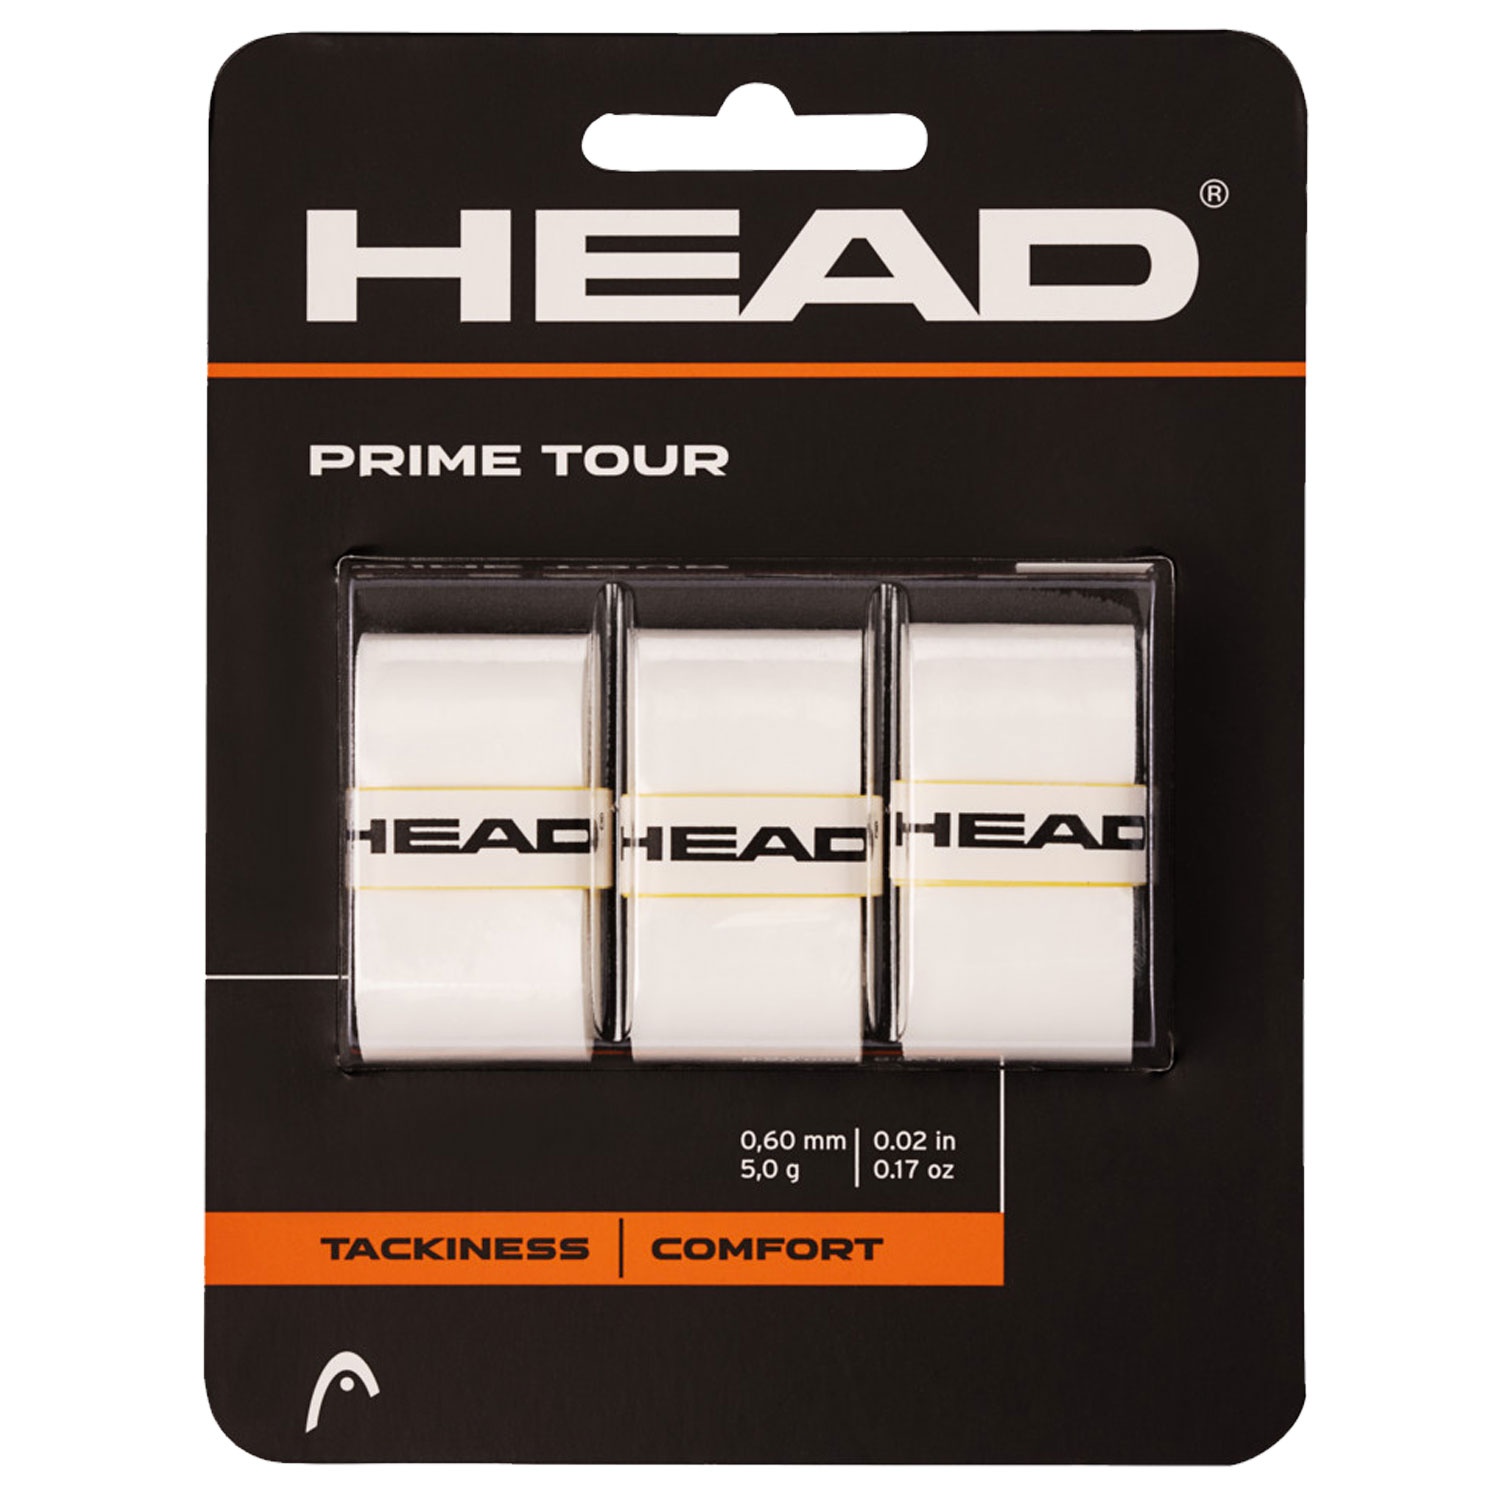 Head Prime Tour x3 White